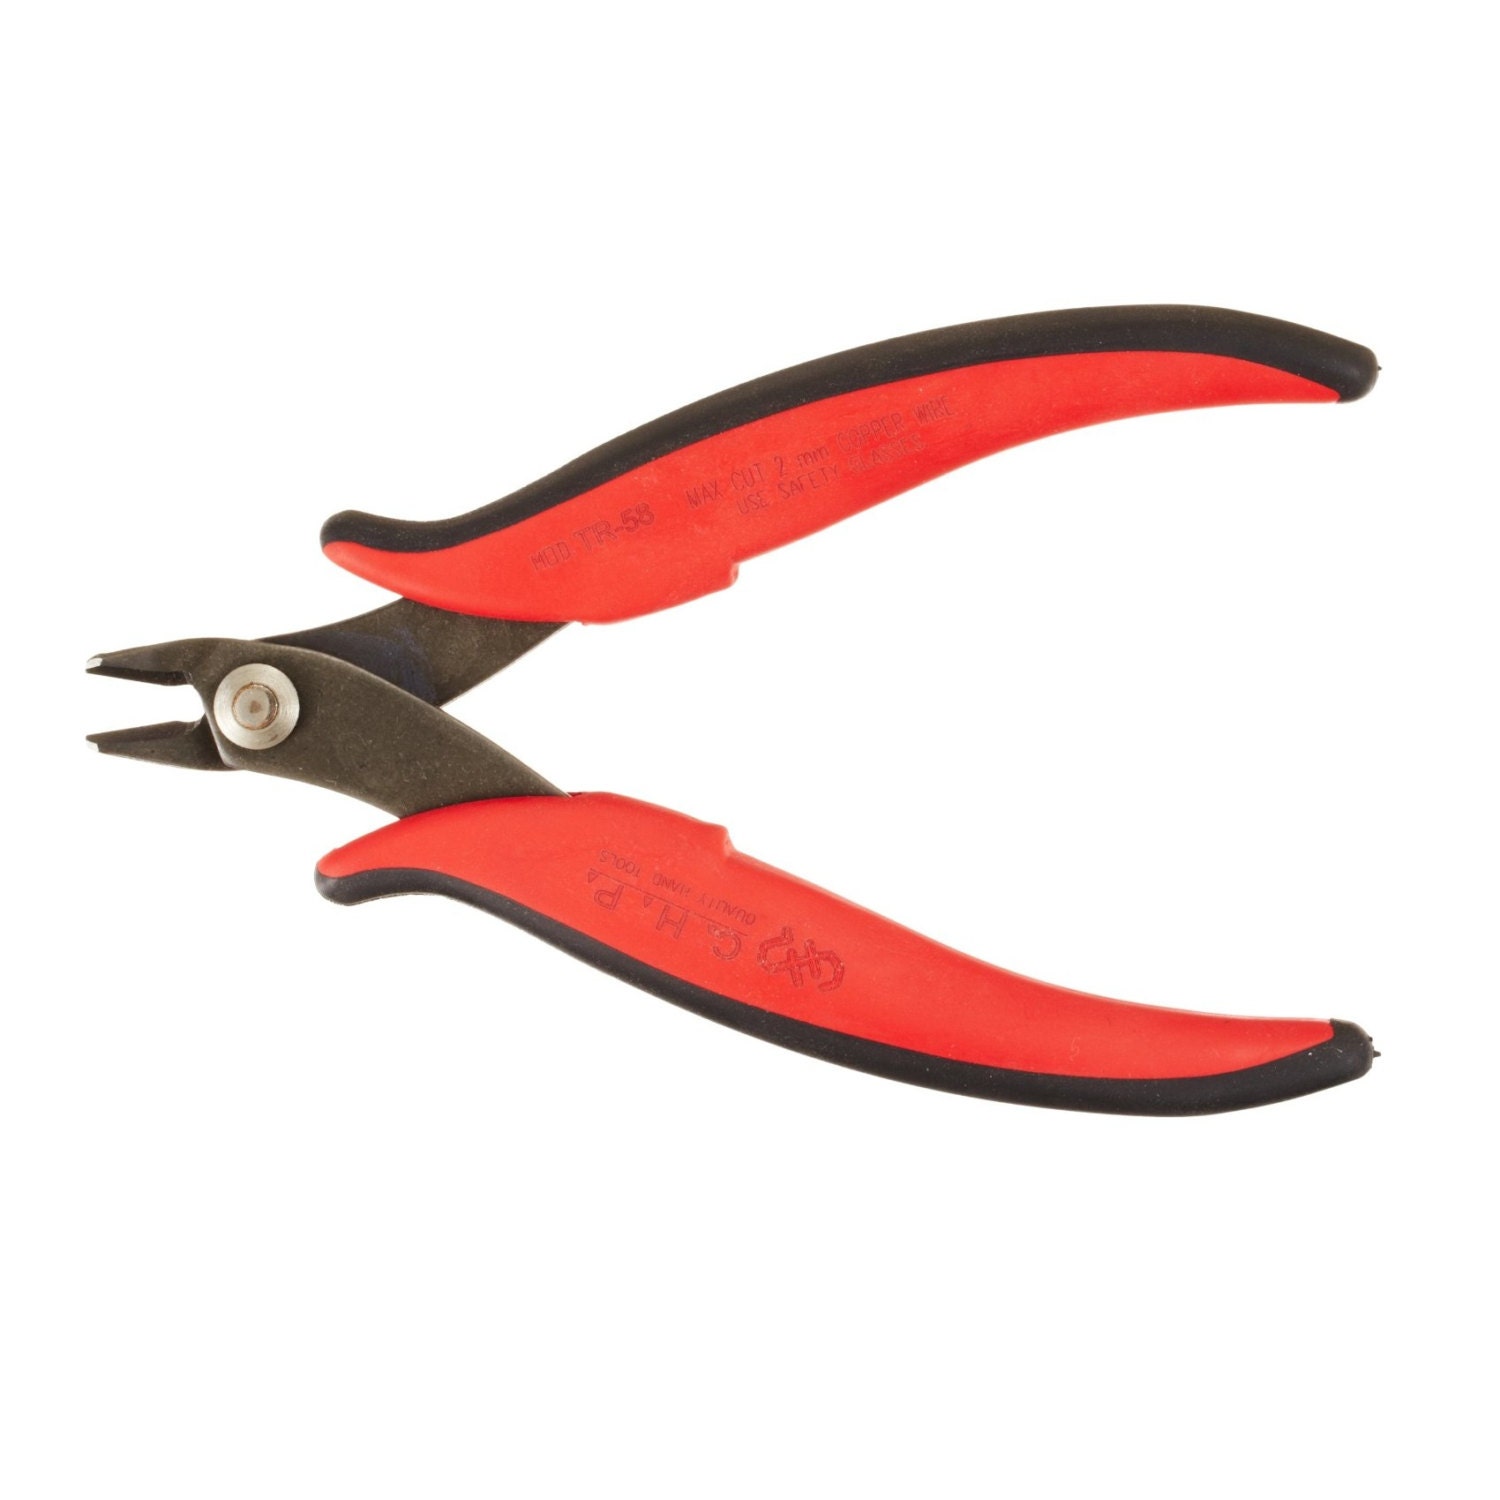 Medium Blunt Cutter Hakko Wire Cutters Jewelers Tool image